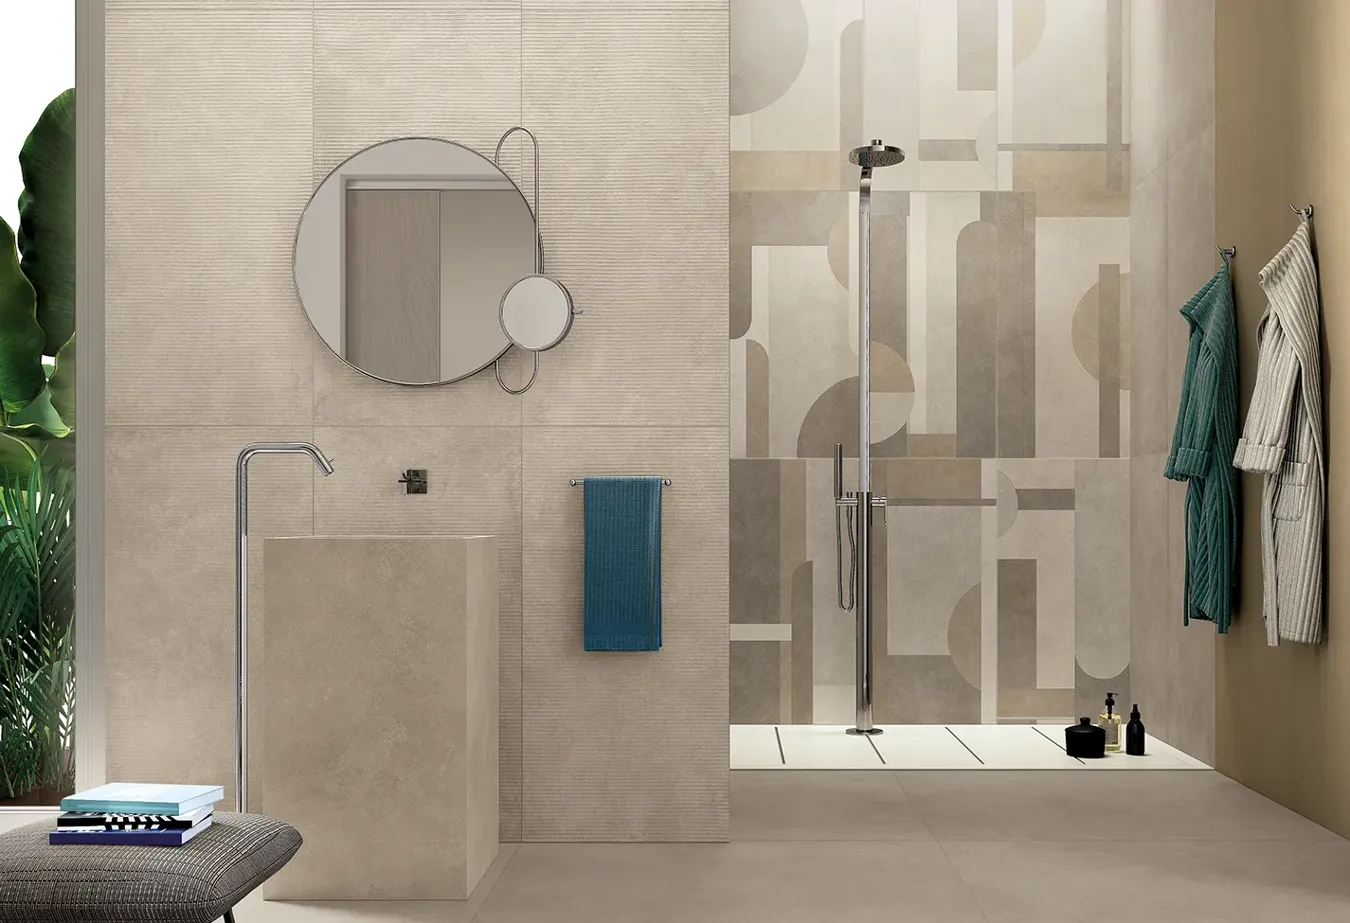 Piastrelle Geo Walnut con effetto resina, in bagno contemporaneo con specchio rotondo e dettagli cromati.